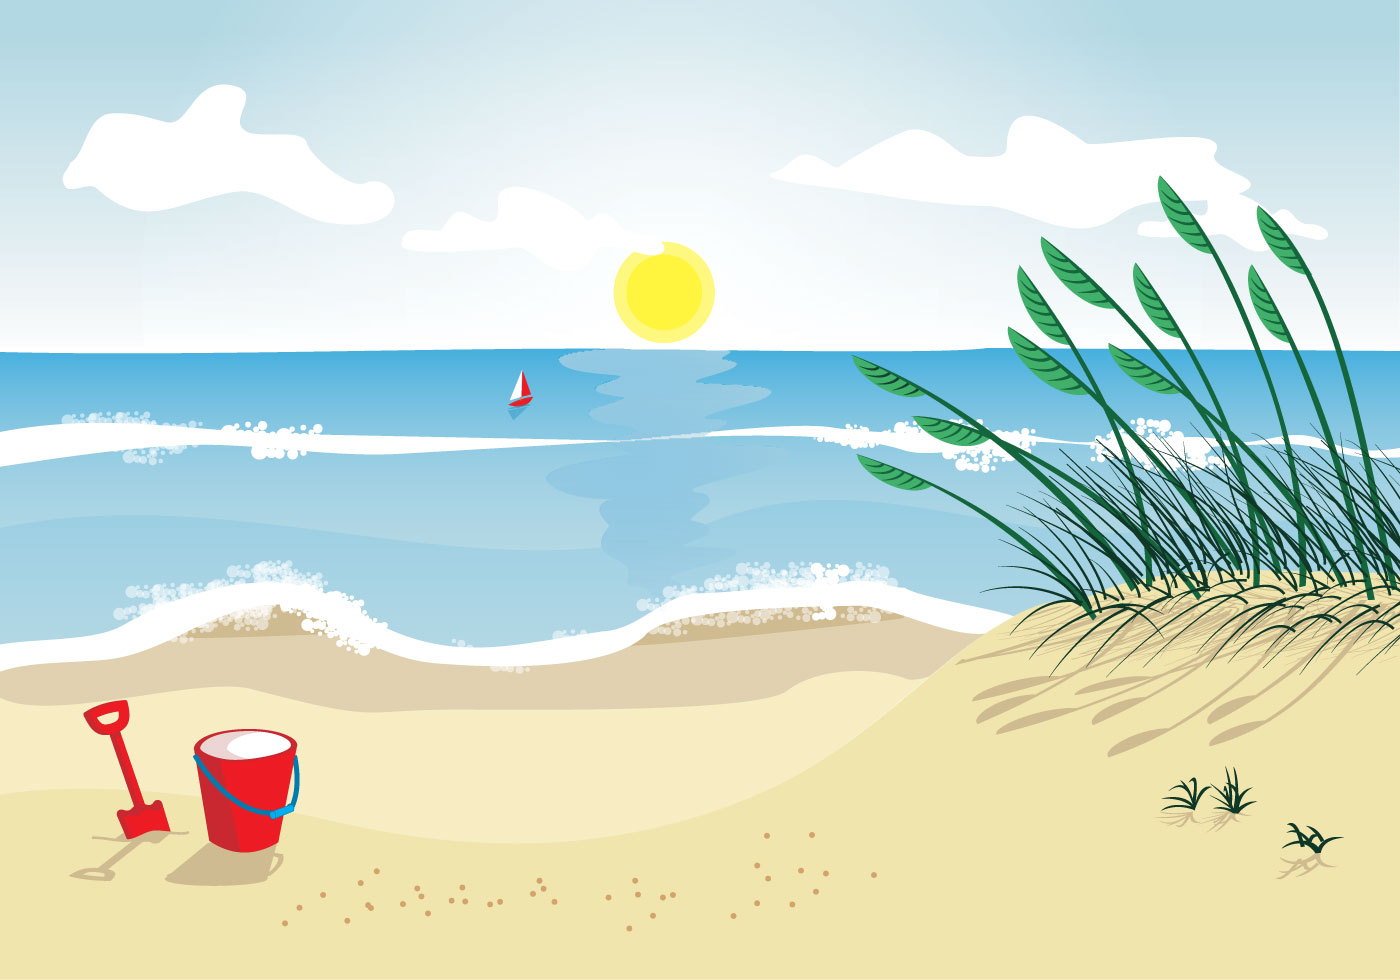 Sea oats beach vector illustration - Download Free Vectors ...